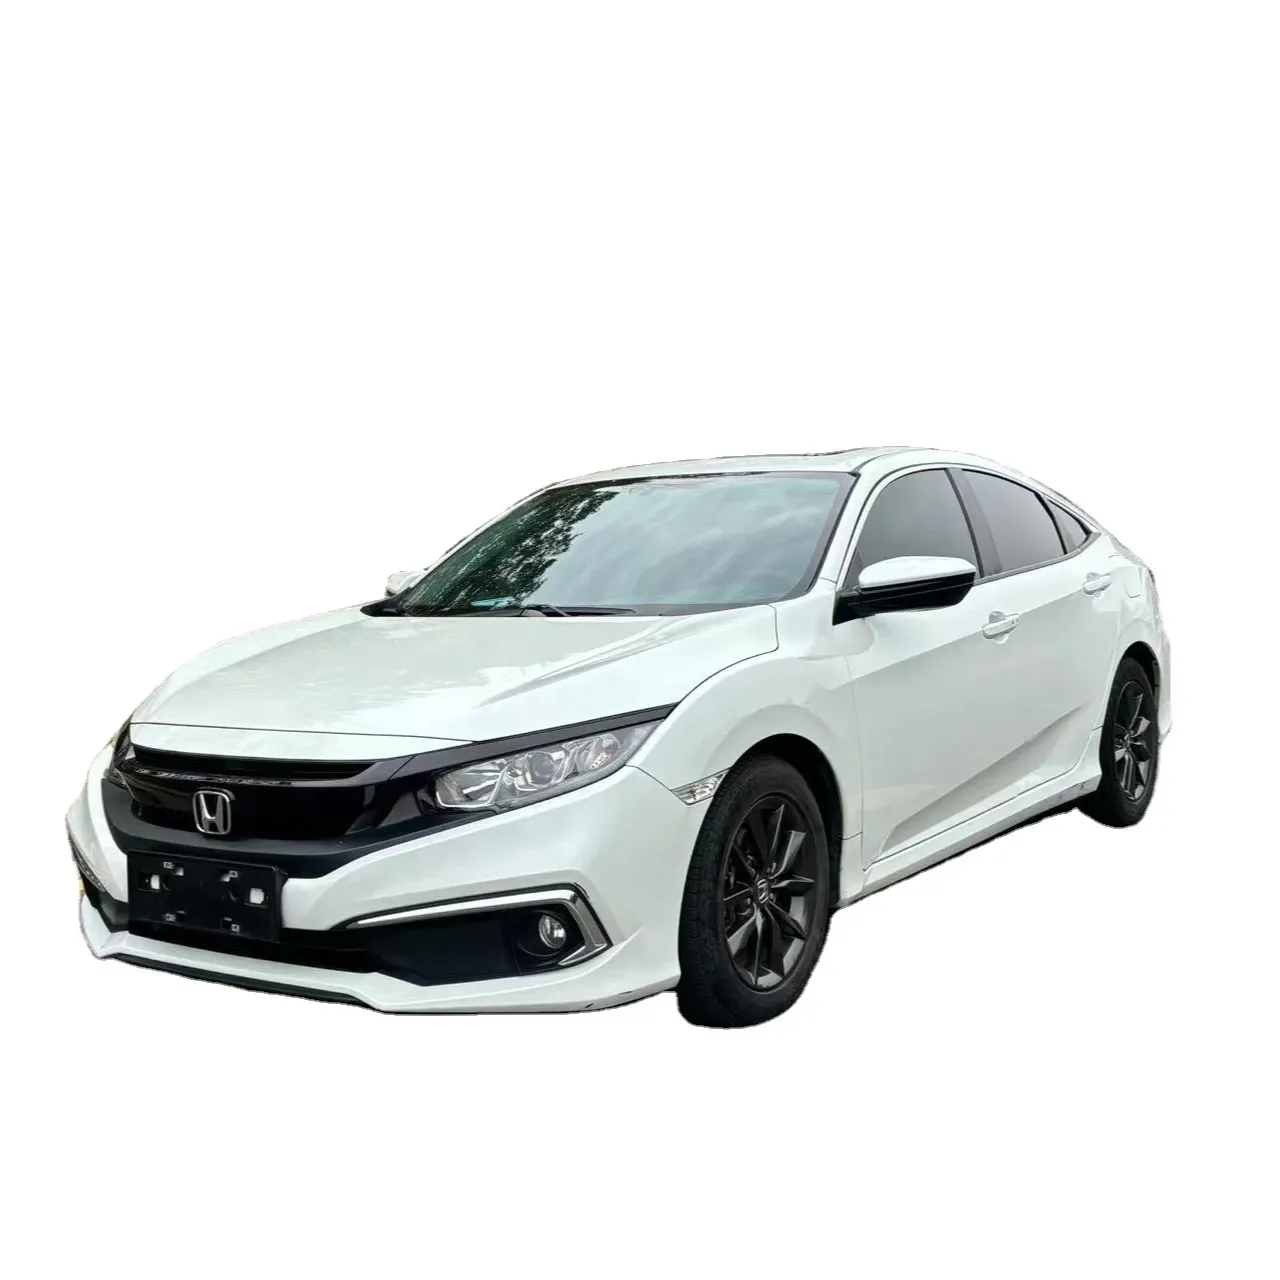 Подержанный Honda Civic 1,5 TC VTEC Премиум седан с турбонаддувом TCP левый привод доступный Подержанный автомобиль